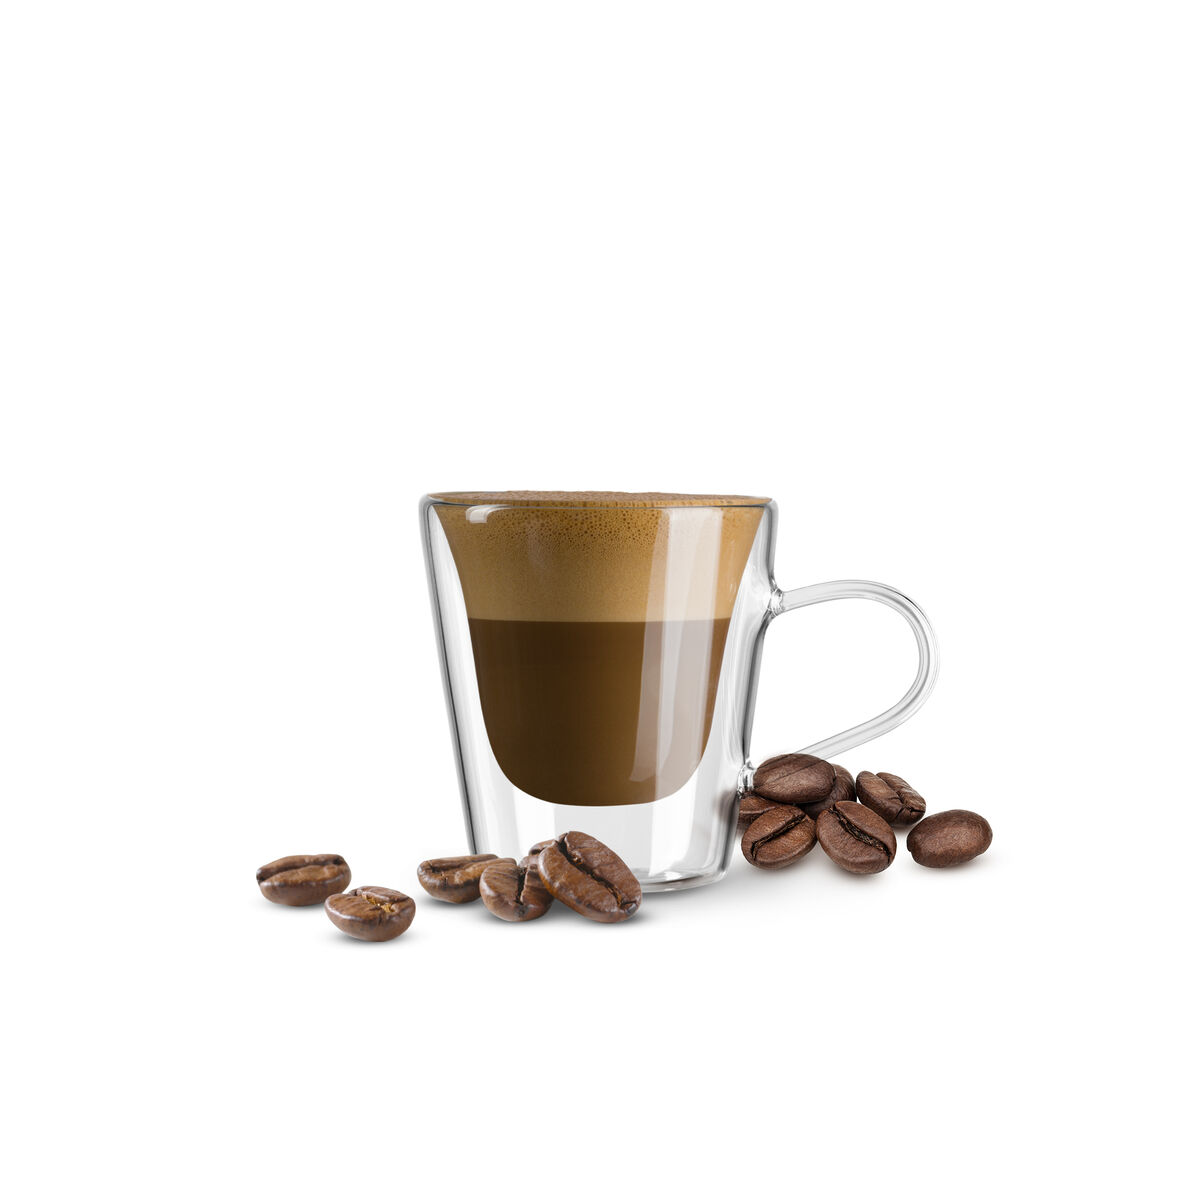 Coffee Borbone Nespresso compatible 10 capsules Suprema - Sapori